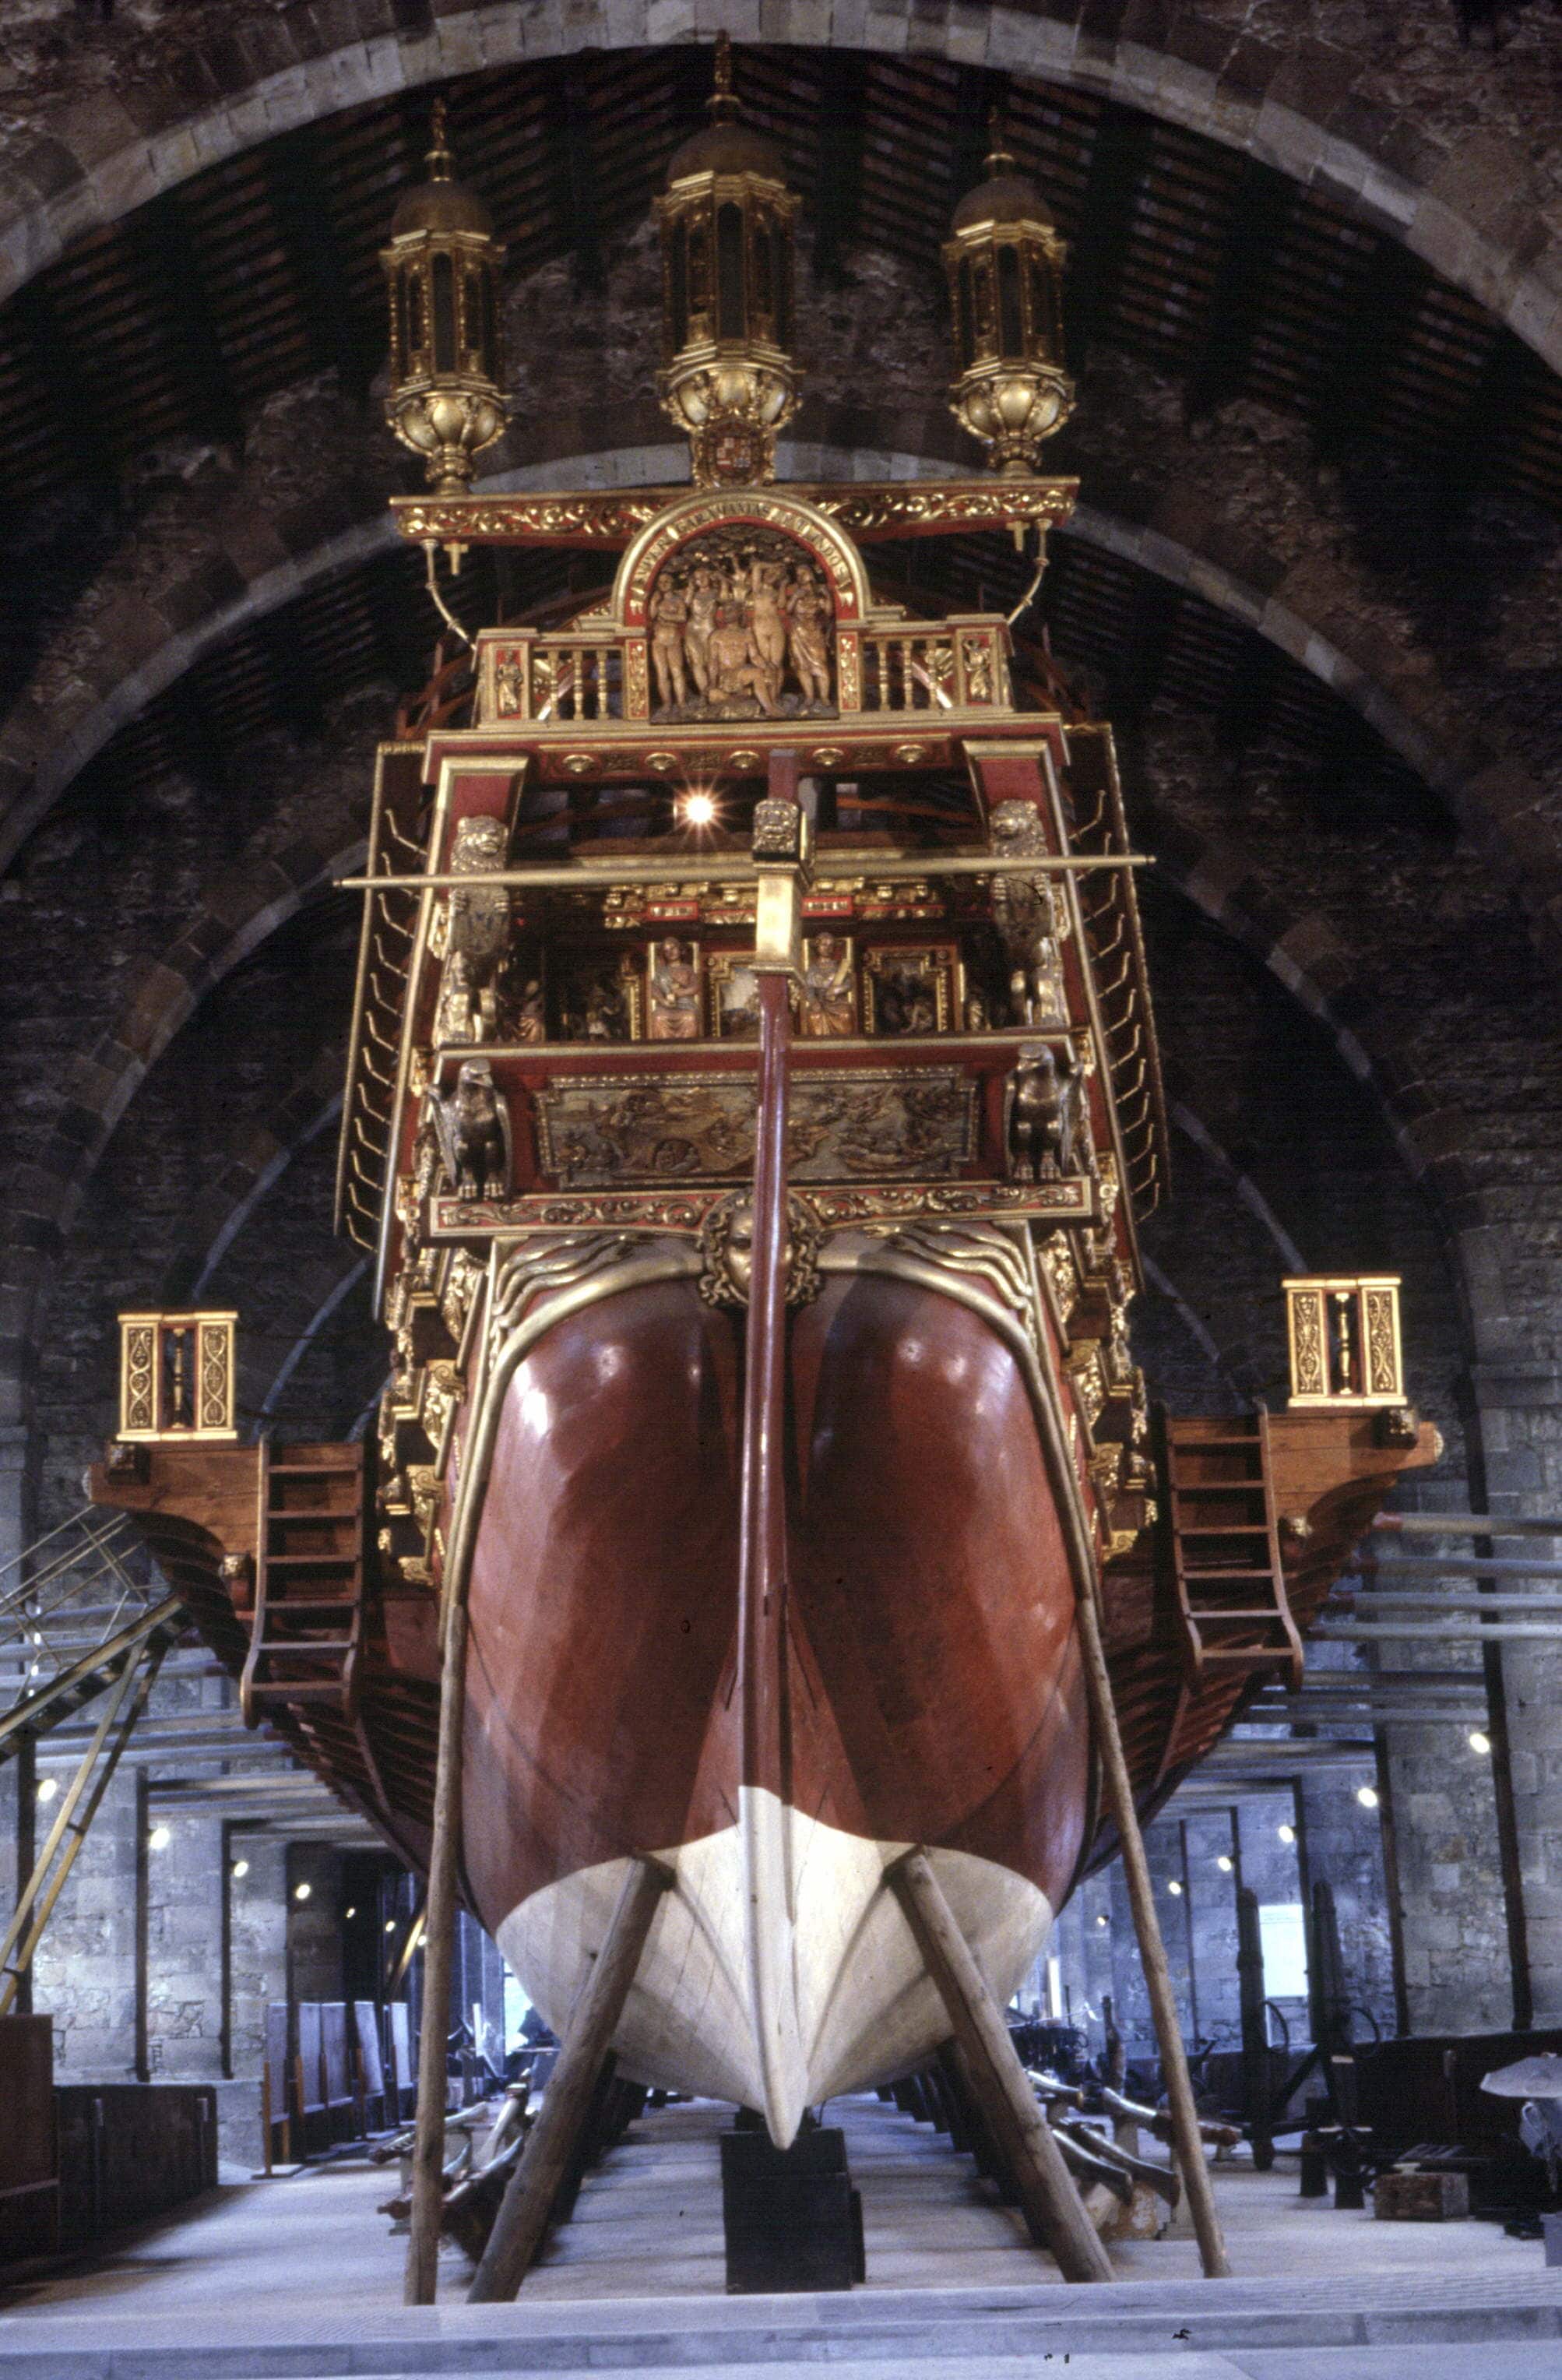 Poppa della Galea Reale comandata da Don Giovanni d’Asturia durante la battaglia di Lepanto, conservata presso il Museo della Marina di Barcellona